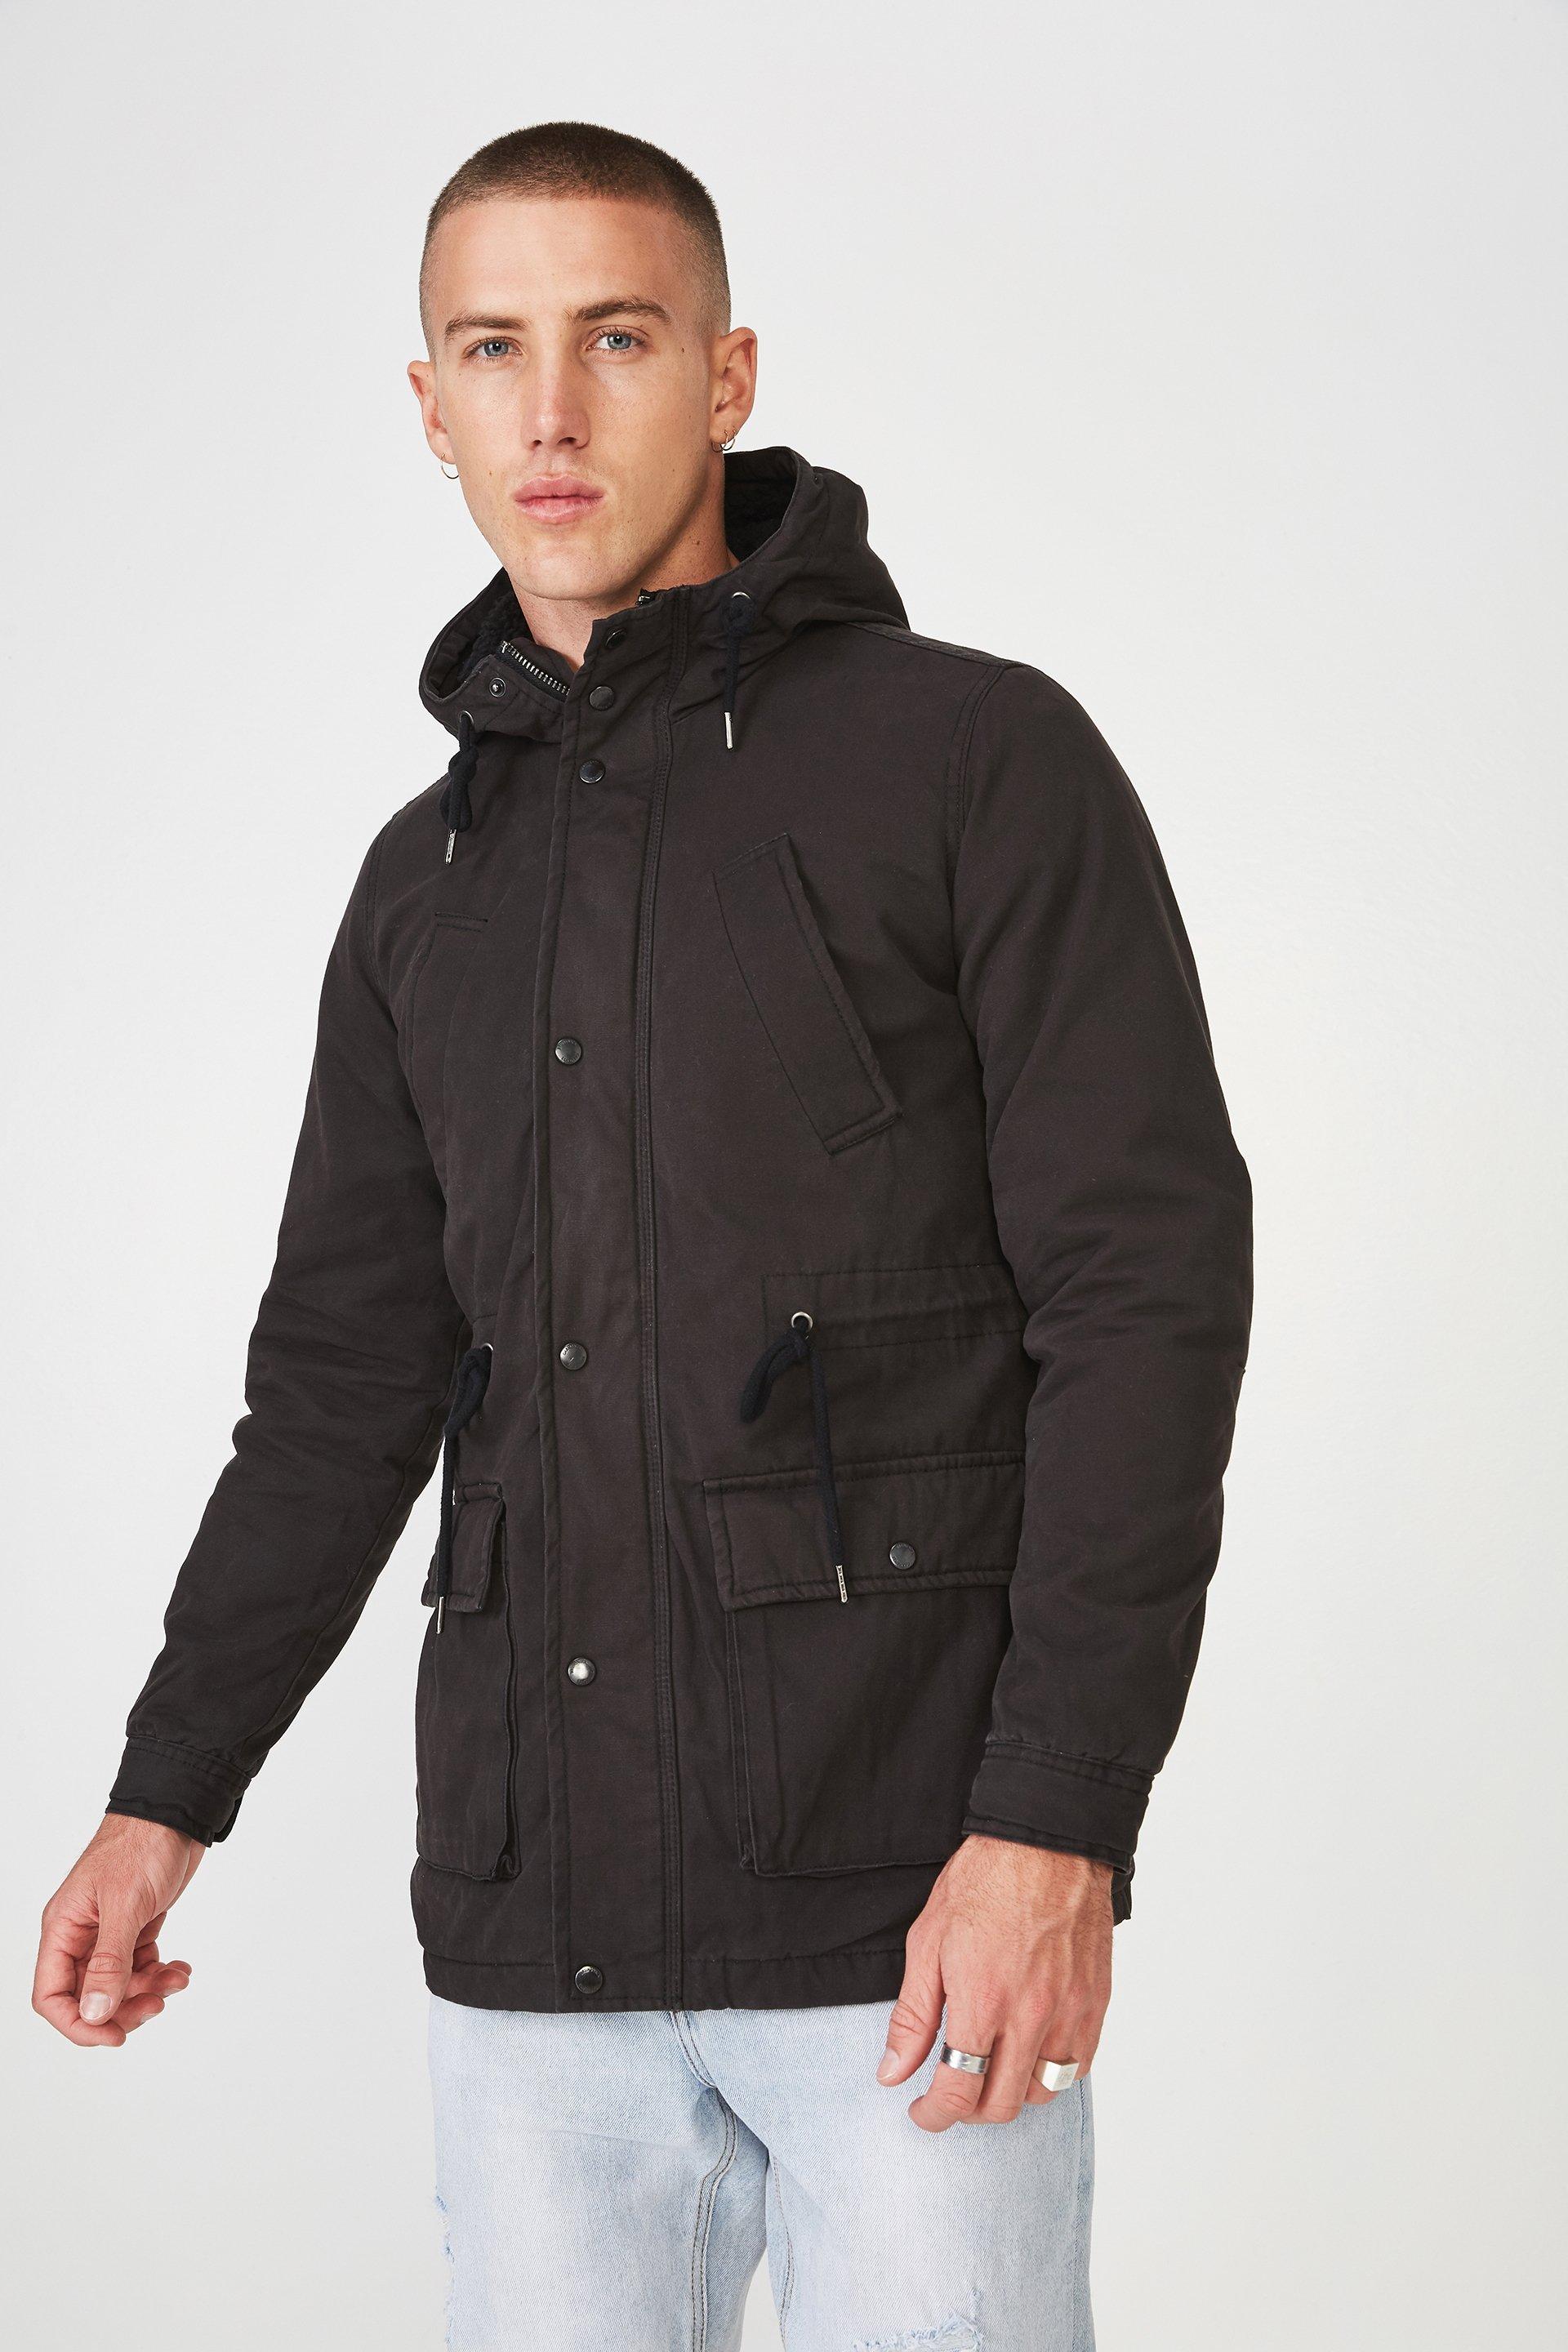 Nu military jacket - black Cotton On Jackets | Superbalist.com